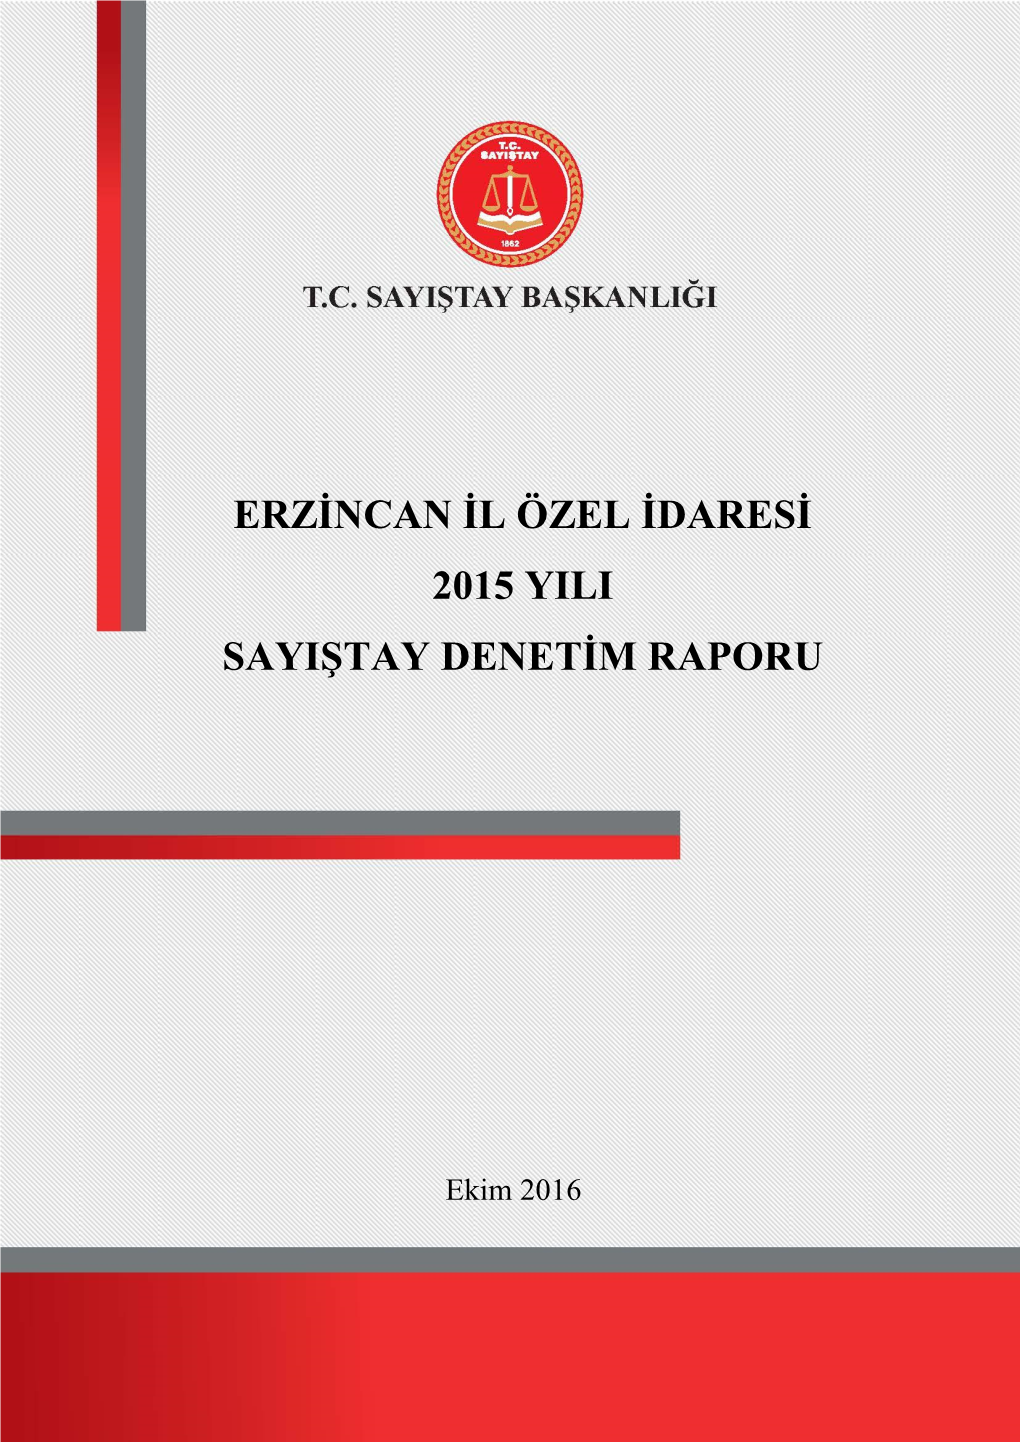 Erzġncan Ġl Özel Ġdaresġ 2015 Yili Sayiġtay Denetġm Raporu